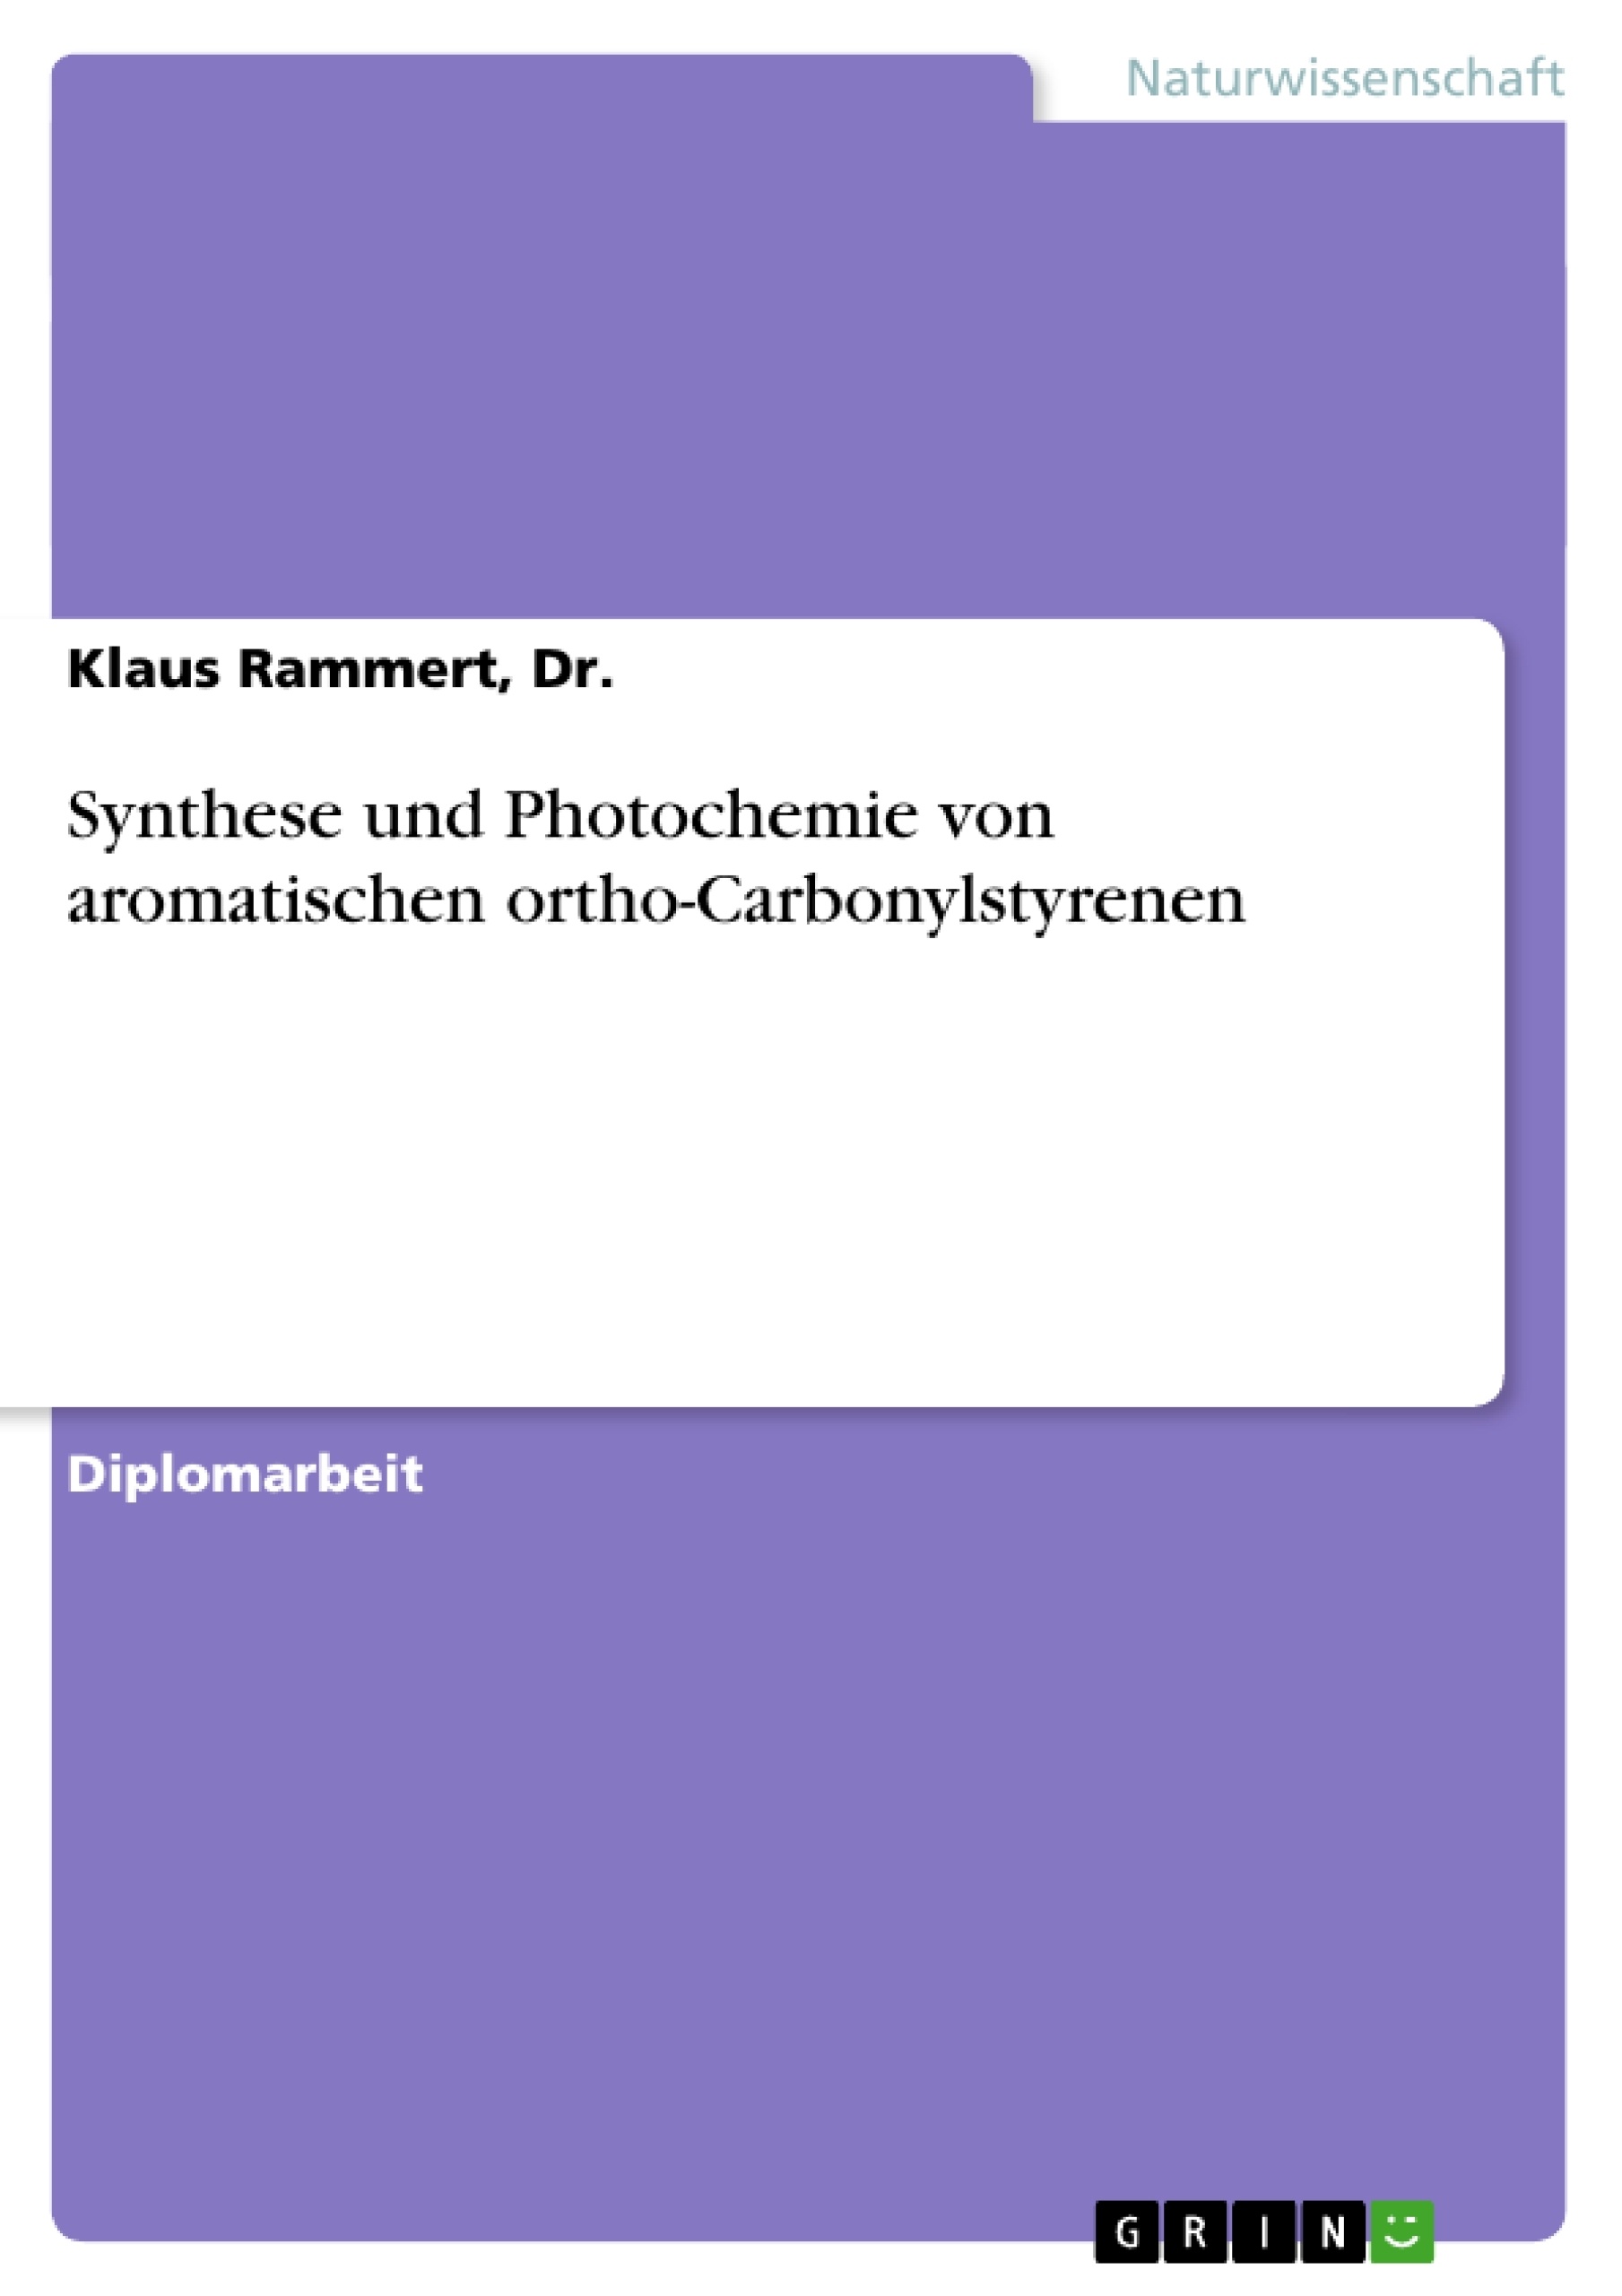 Title: Synthese und Photochemie von aromatischen ortho-Carbonylstyrenen